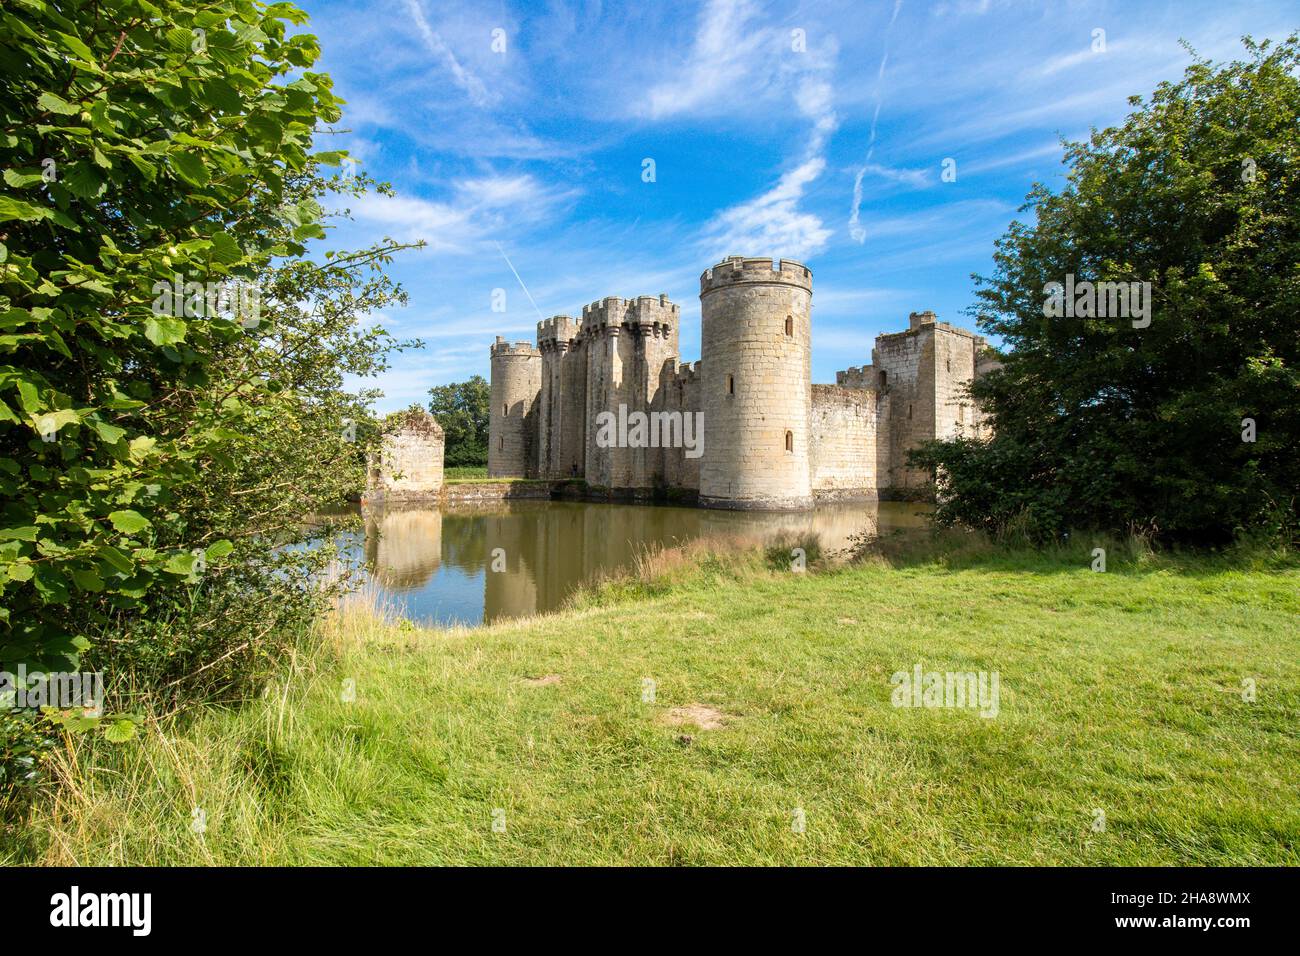 Château de Bodiam datant de 14th ans, près de Robertsbridge, dans l'est du Sussex, en Angleterre. Banque D'Images